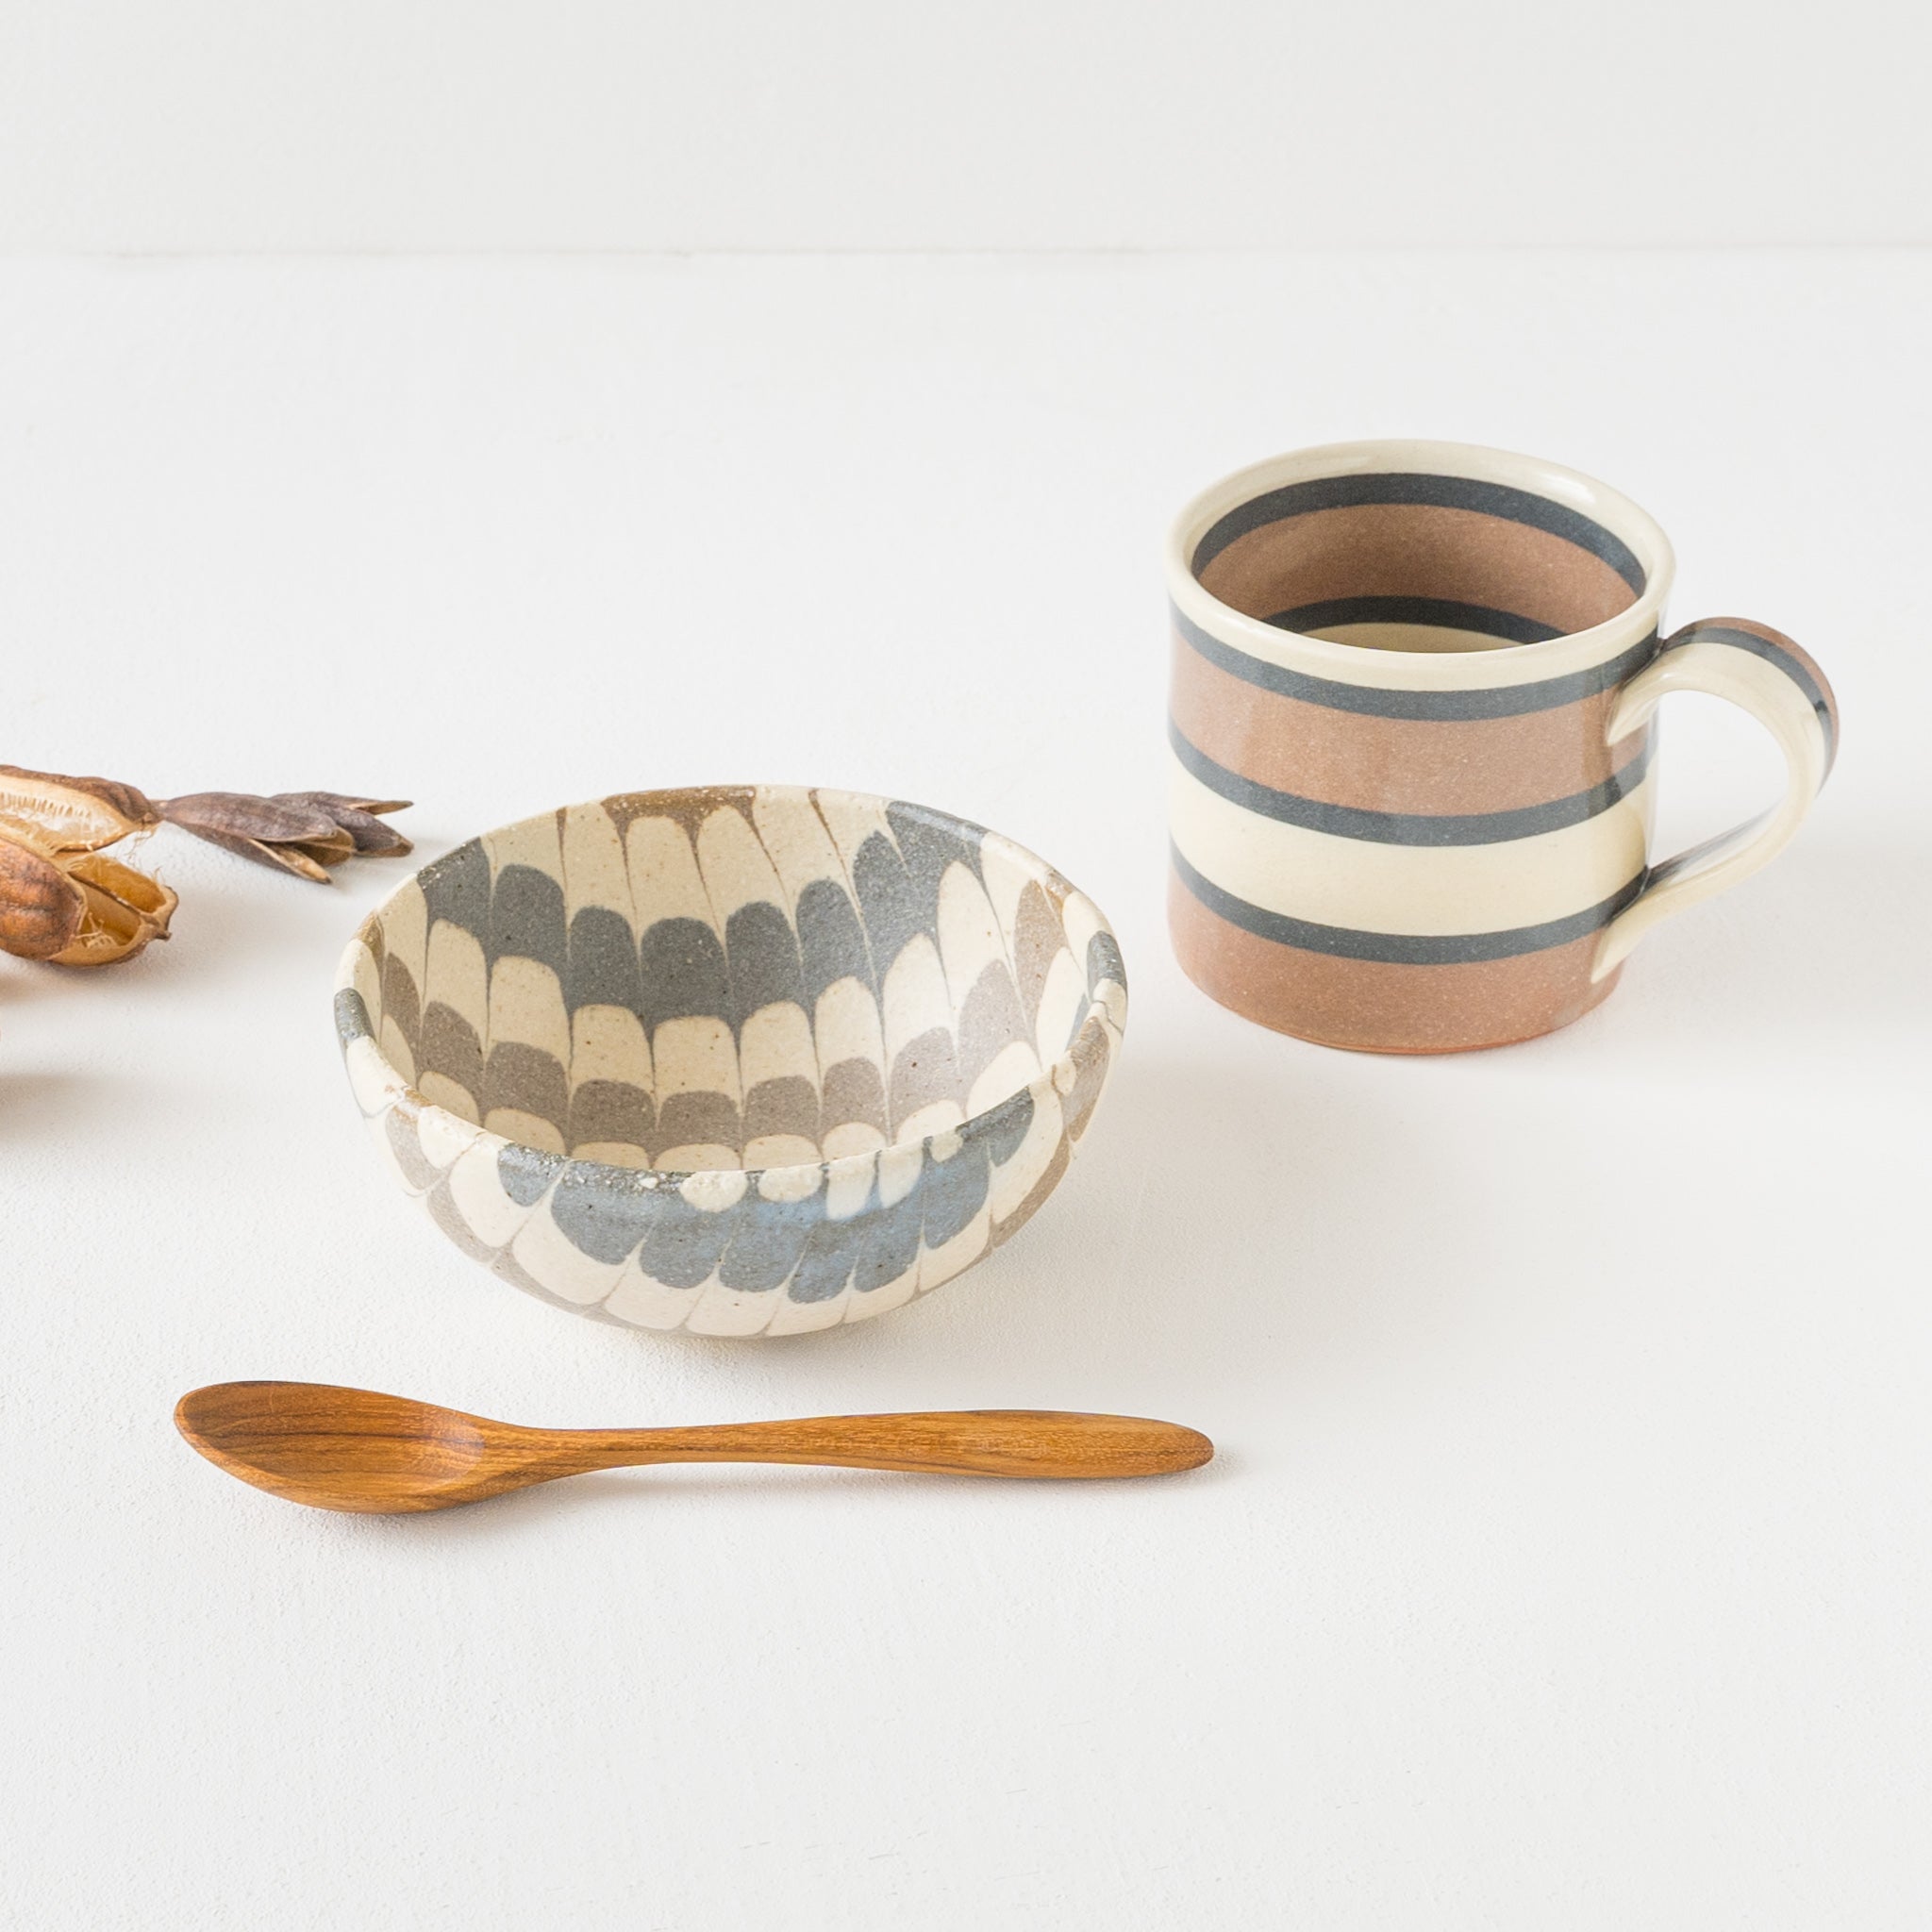 Mug by Hanako Sakashita that makes the table bright and fun